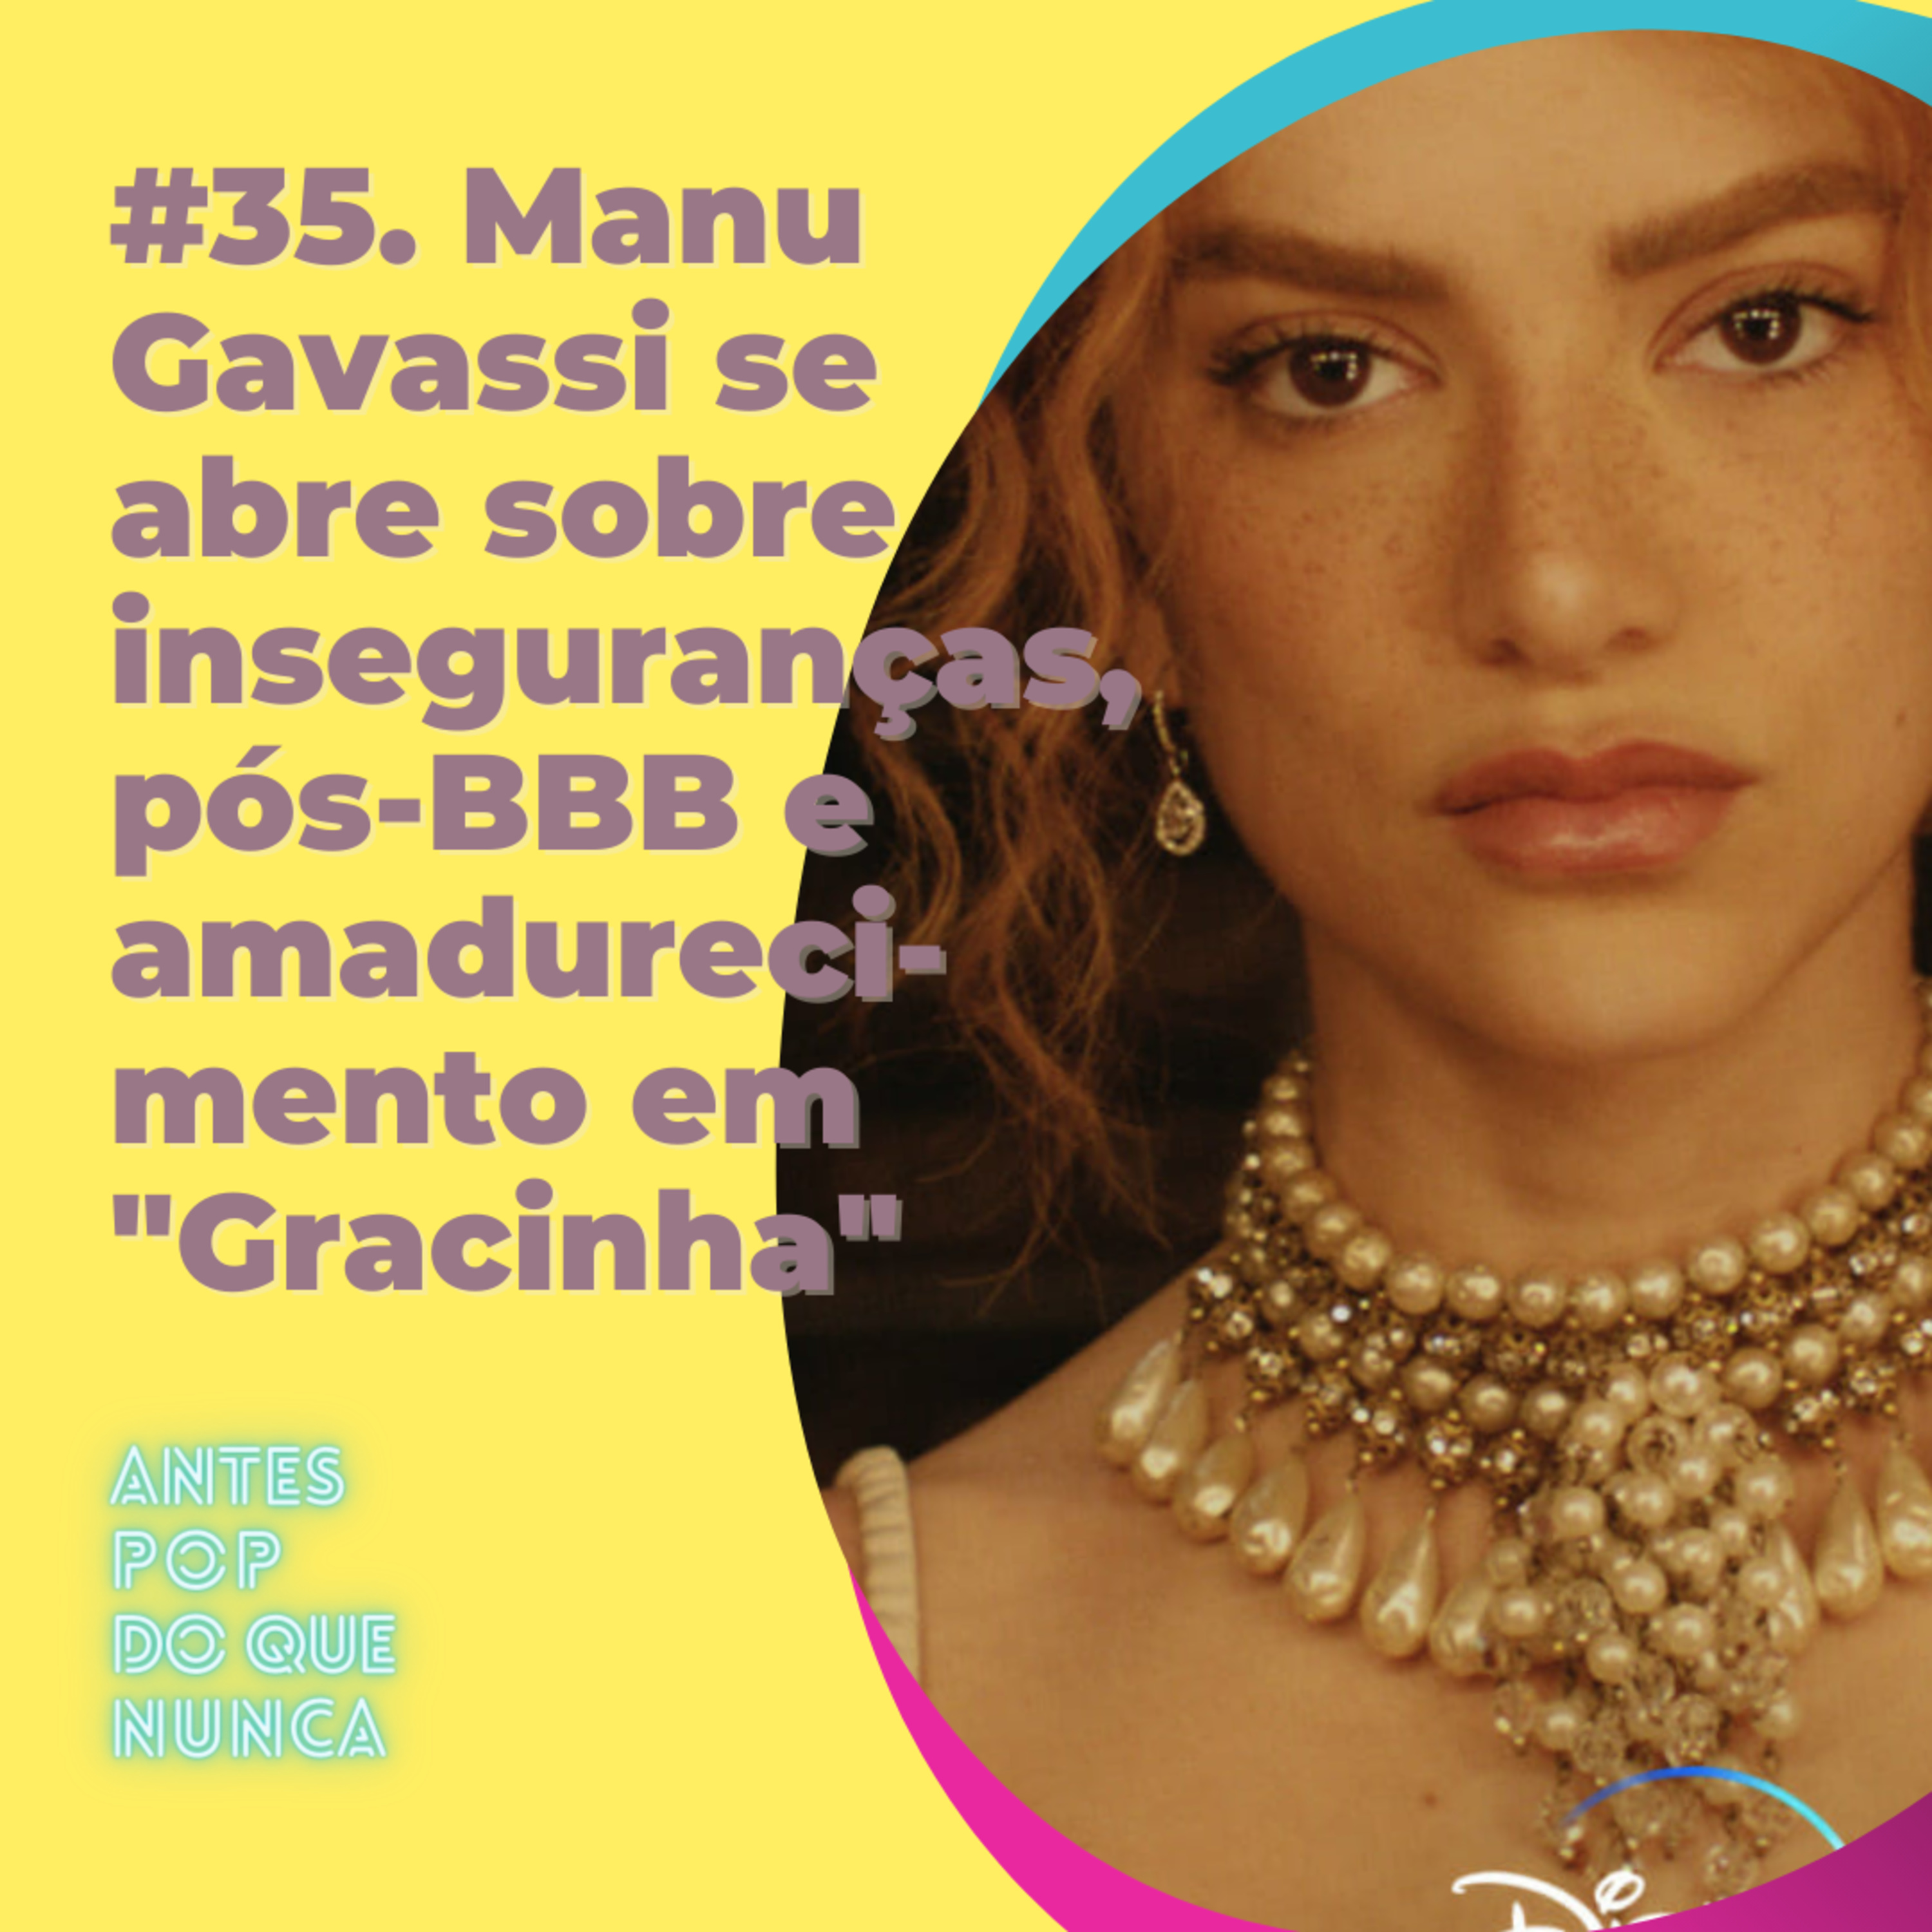 #35. Manu Gavassi se abre sobre inseguranças, pós-BBB e amadurecimento em 